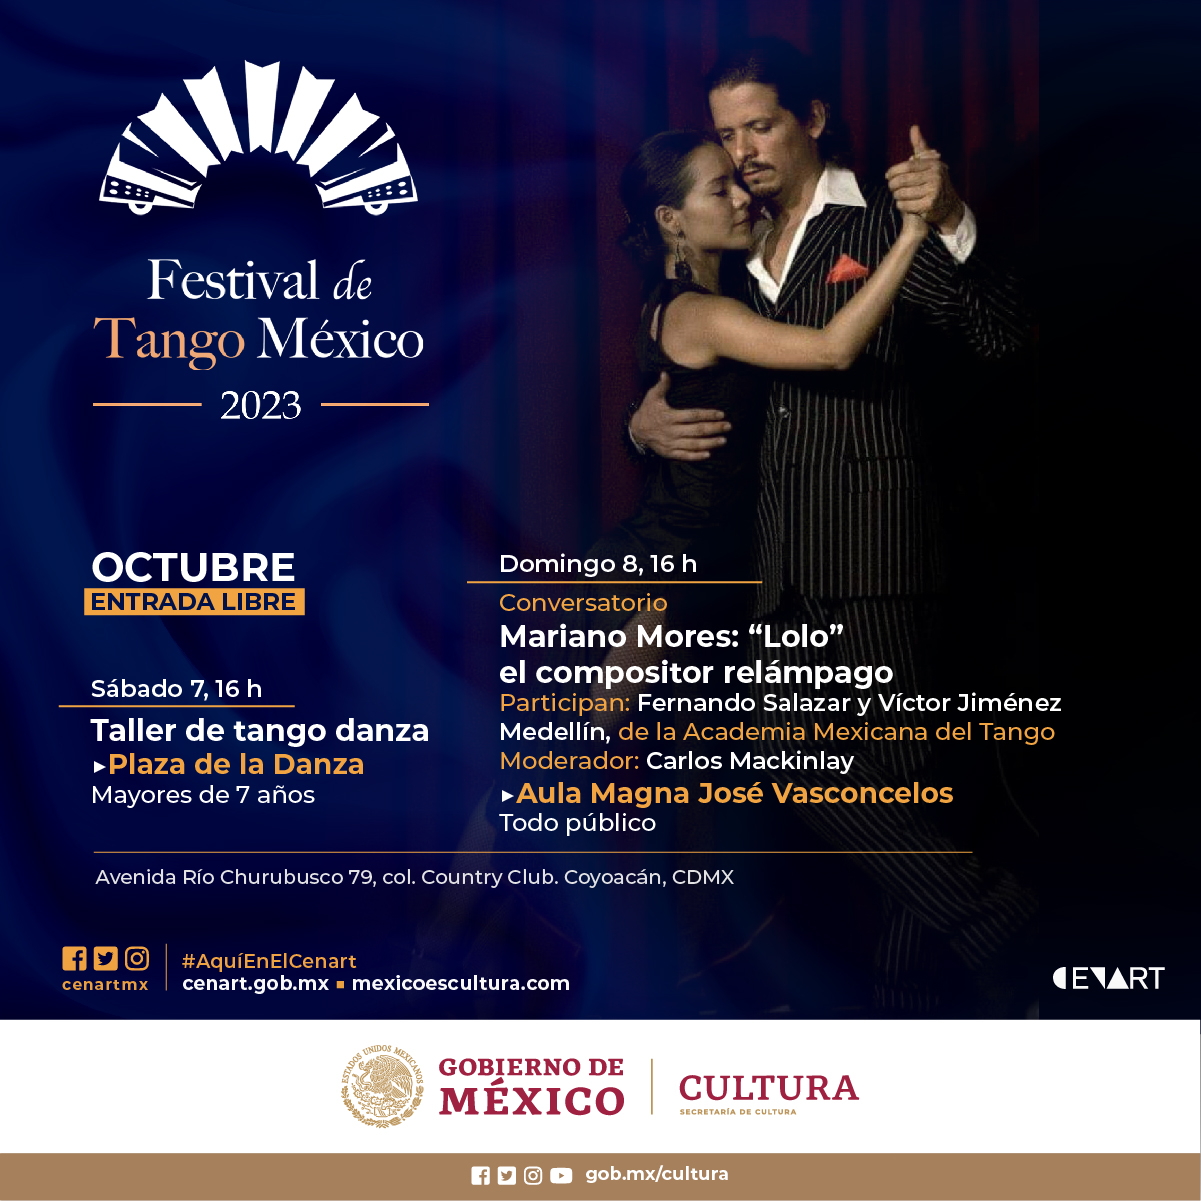 El Centro Nacional de las Artes será una de las tres sedes del Festival de Tango México 2023